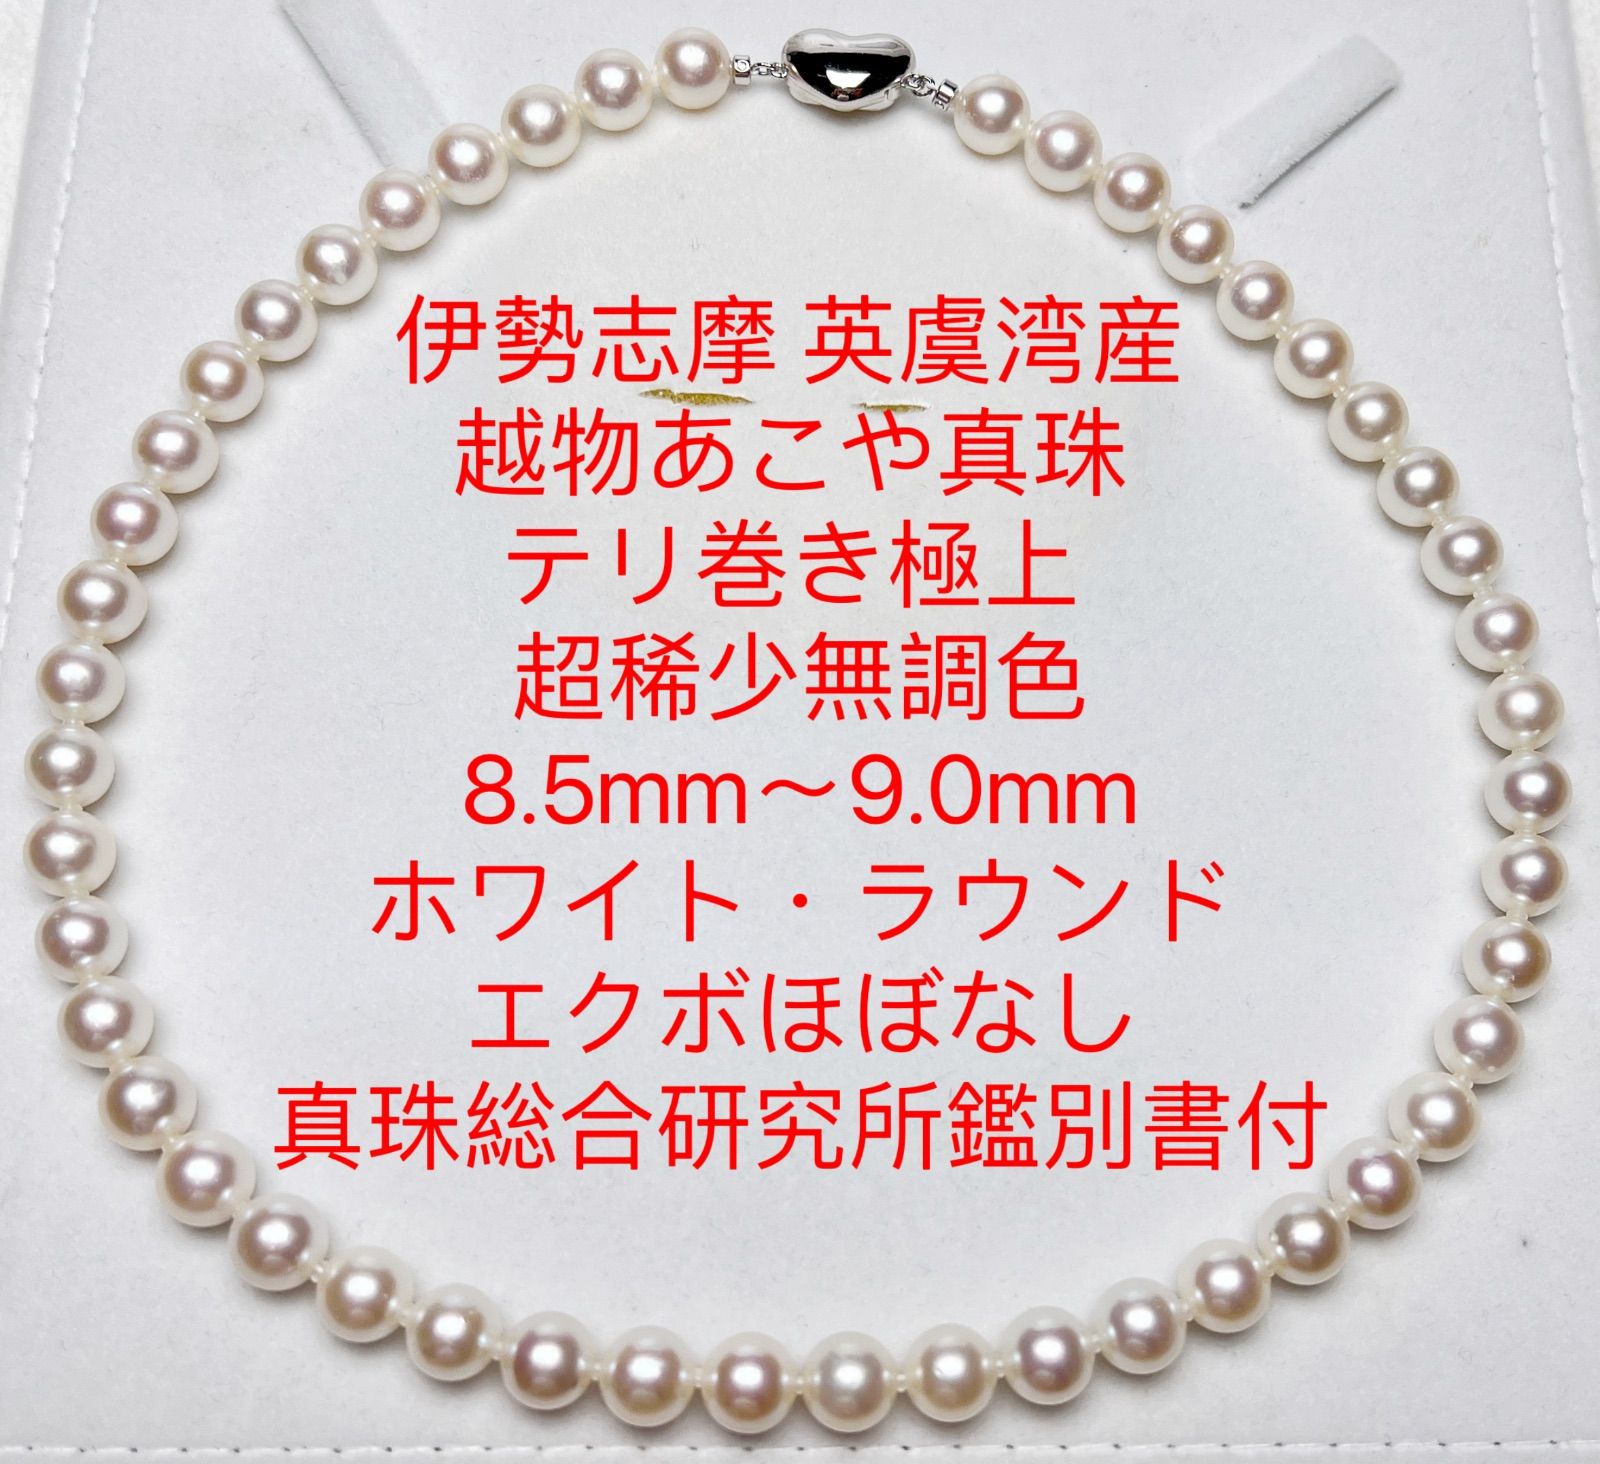 【激安価格】専用アコヤ真珠 ネックレス ピンク 照り巻き良好 真珠総合研究所 アクセサリー